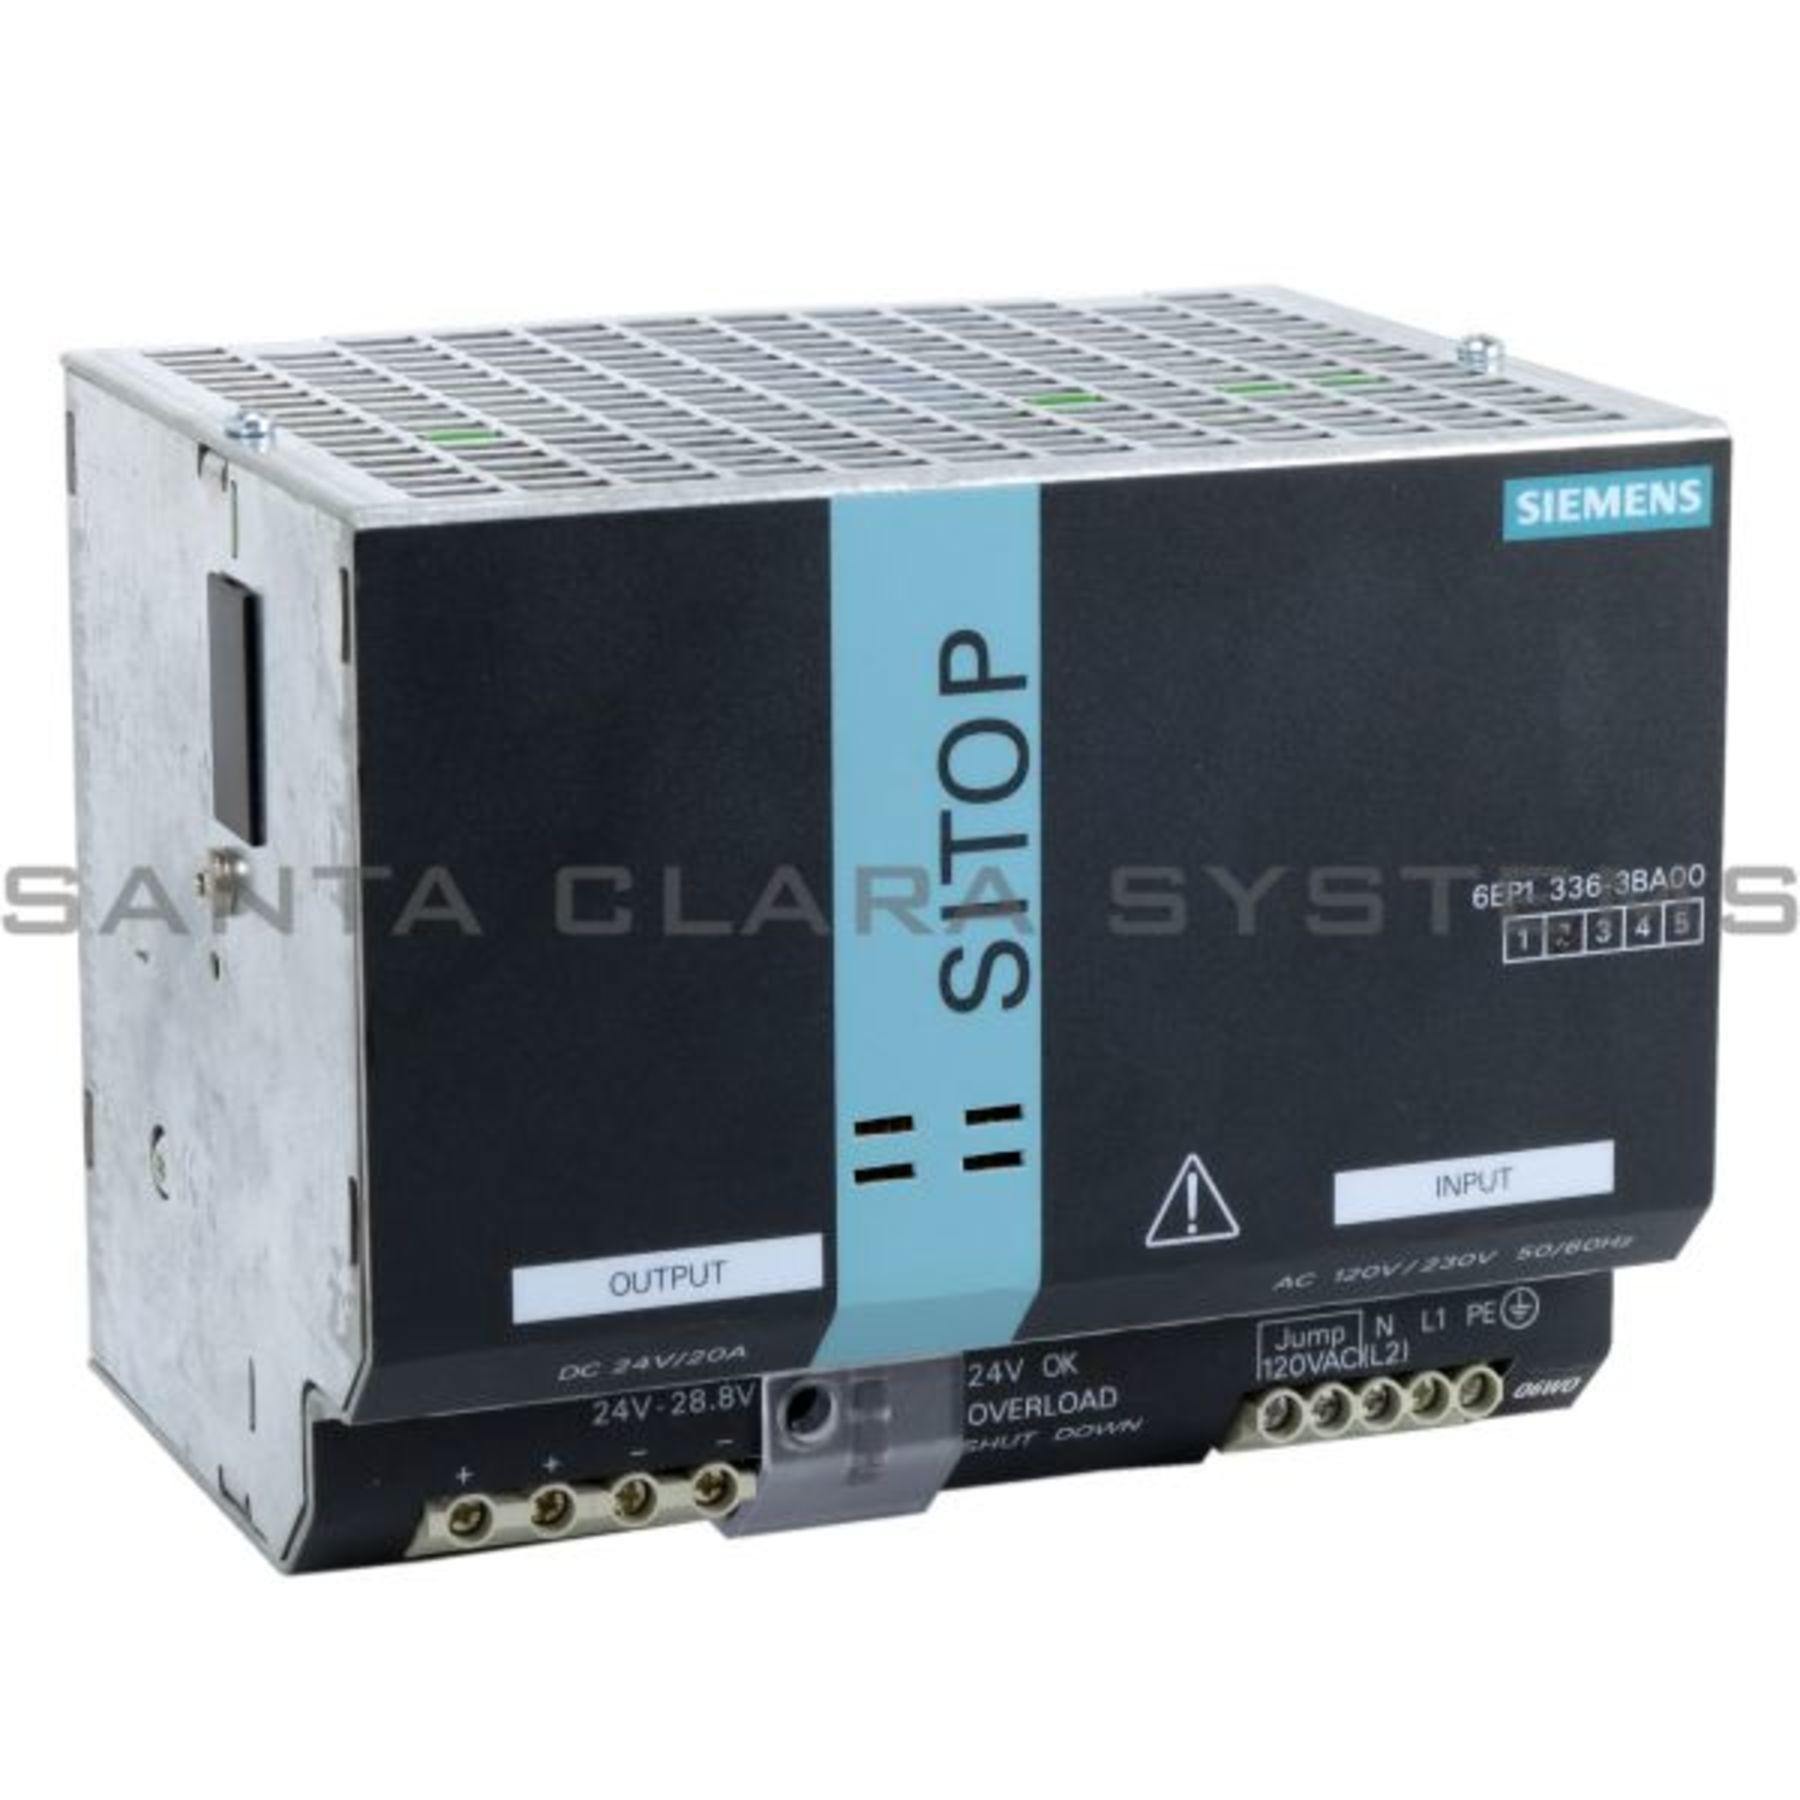 6EP1336-3BA00 Siemens Power Supply | SITOP Modular | 6EP1336-3BA00 